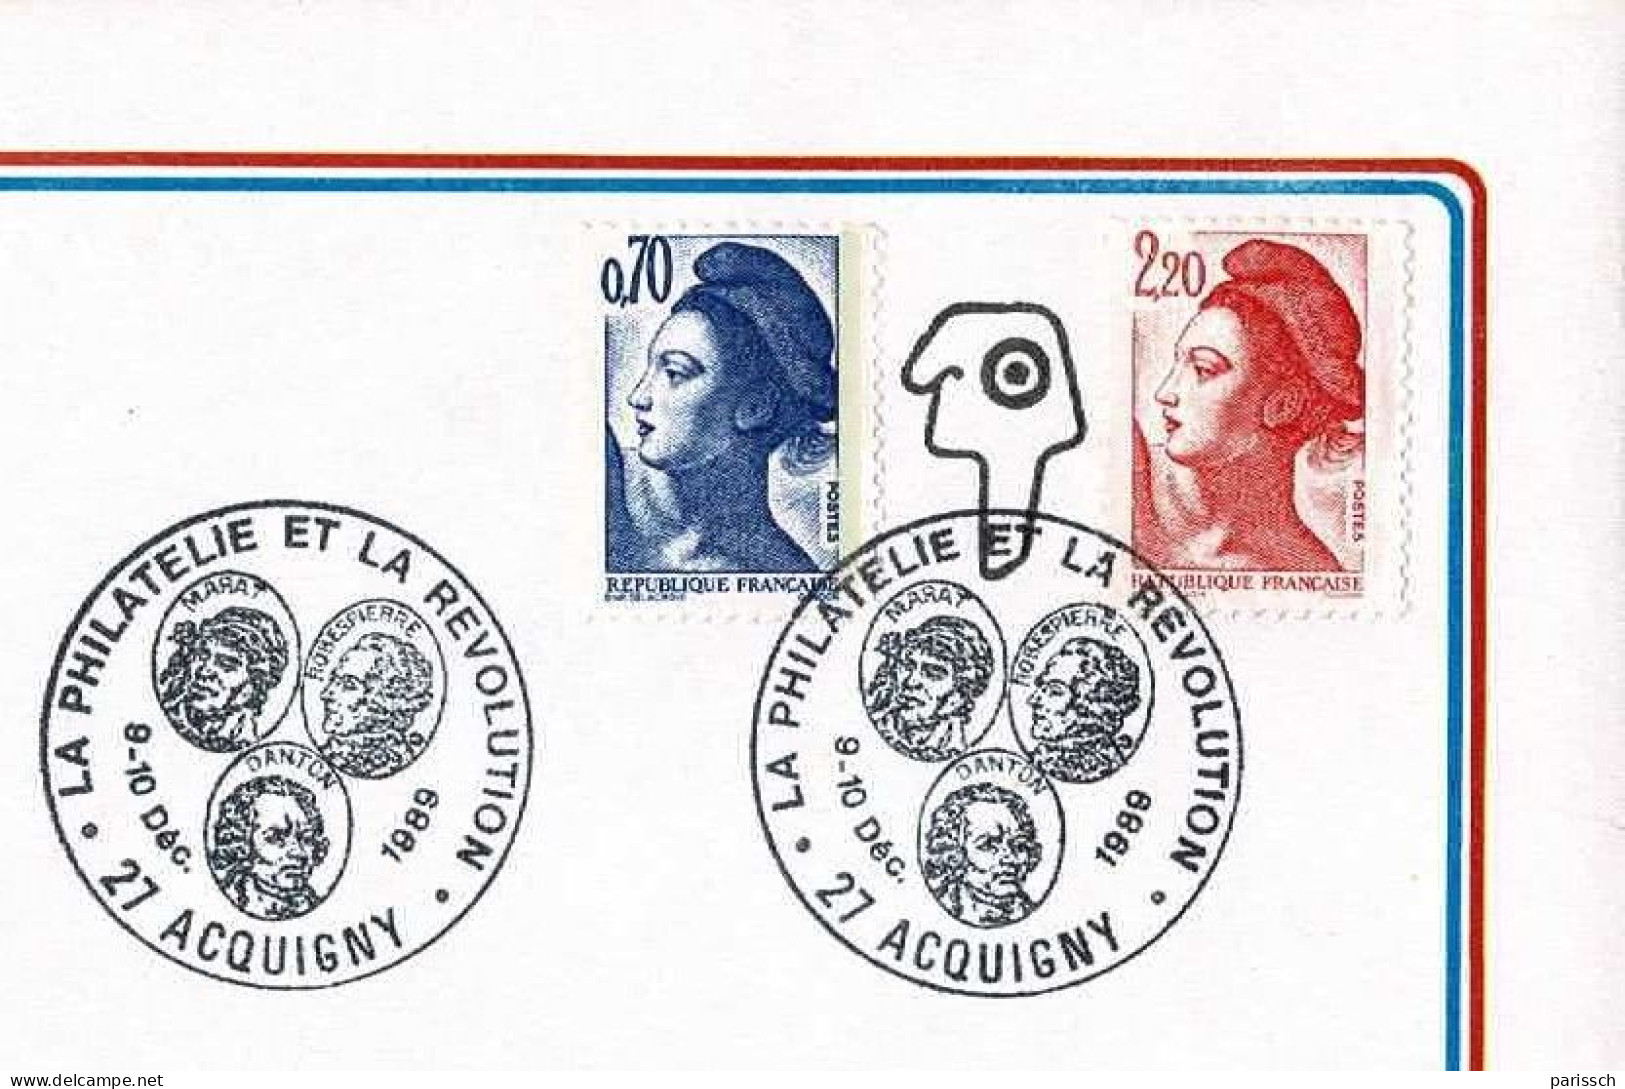 Enveloppe Bicentenaire De La Révolution - 1989 - ACQUIGNY - Rivoluzione Francese